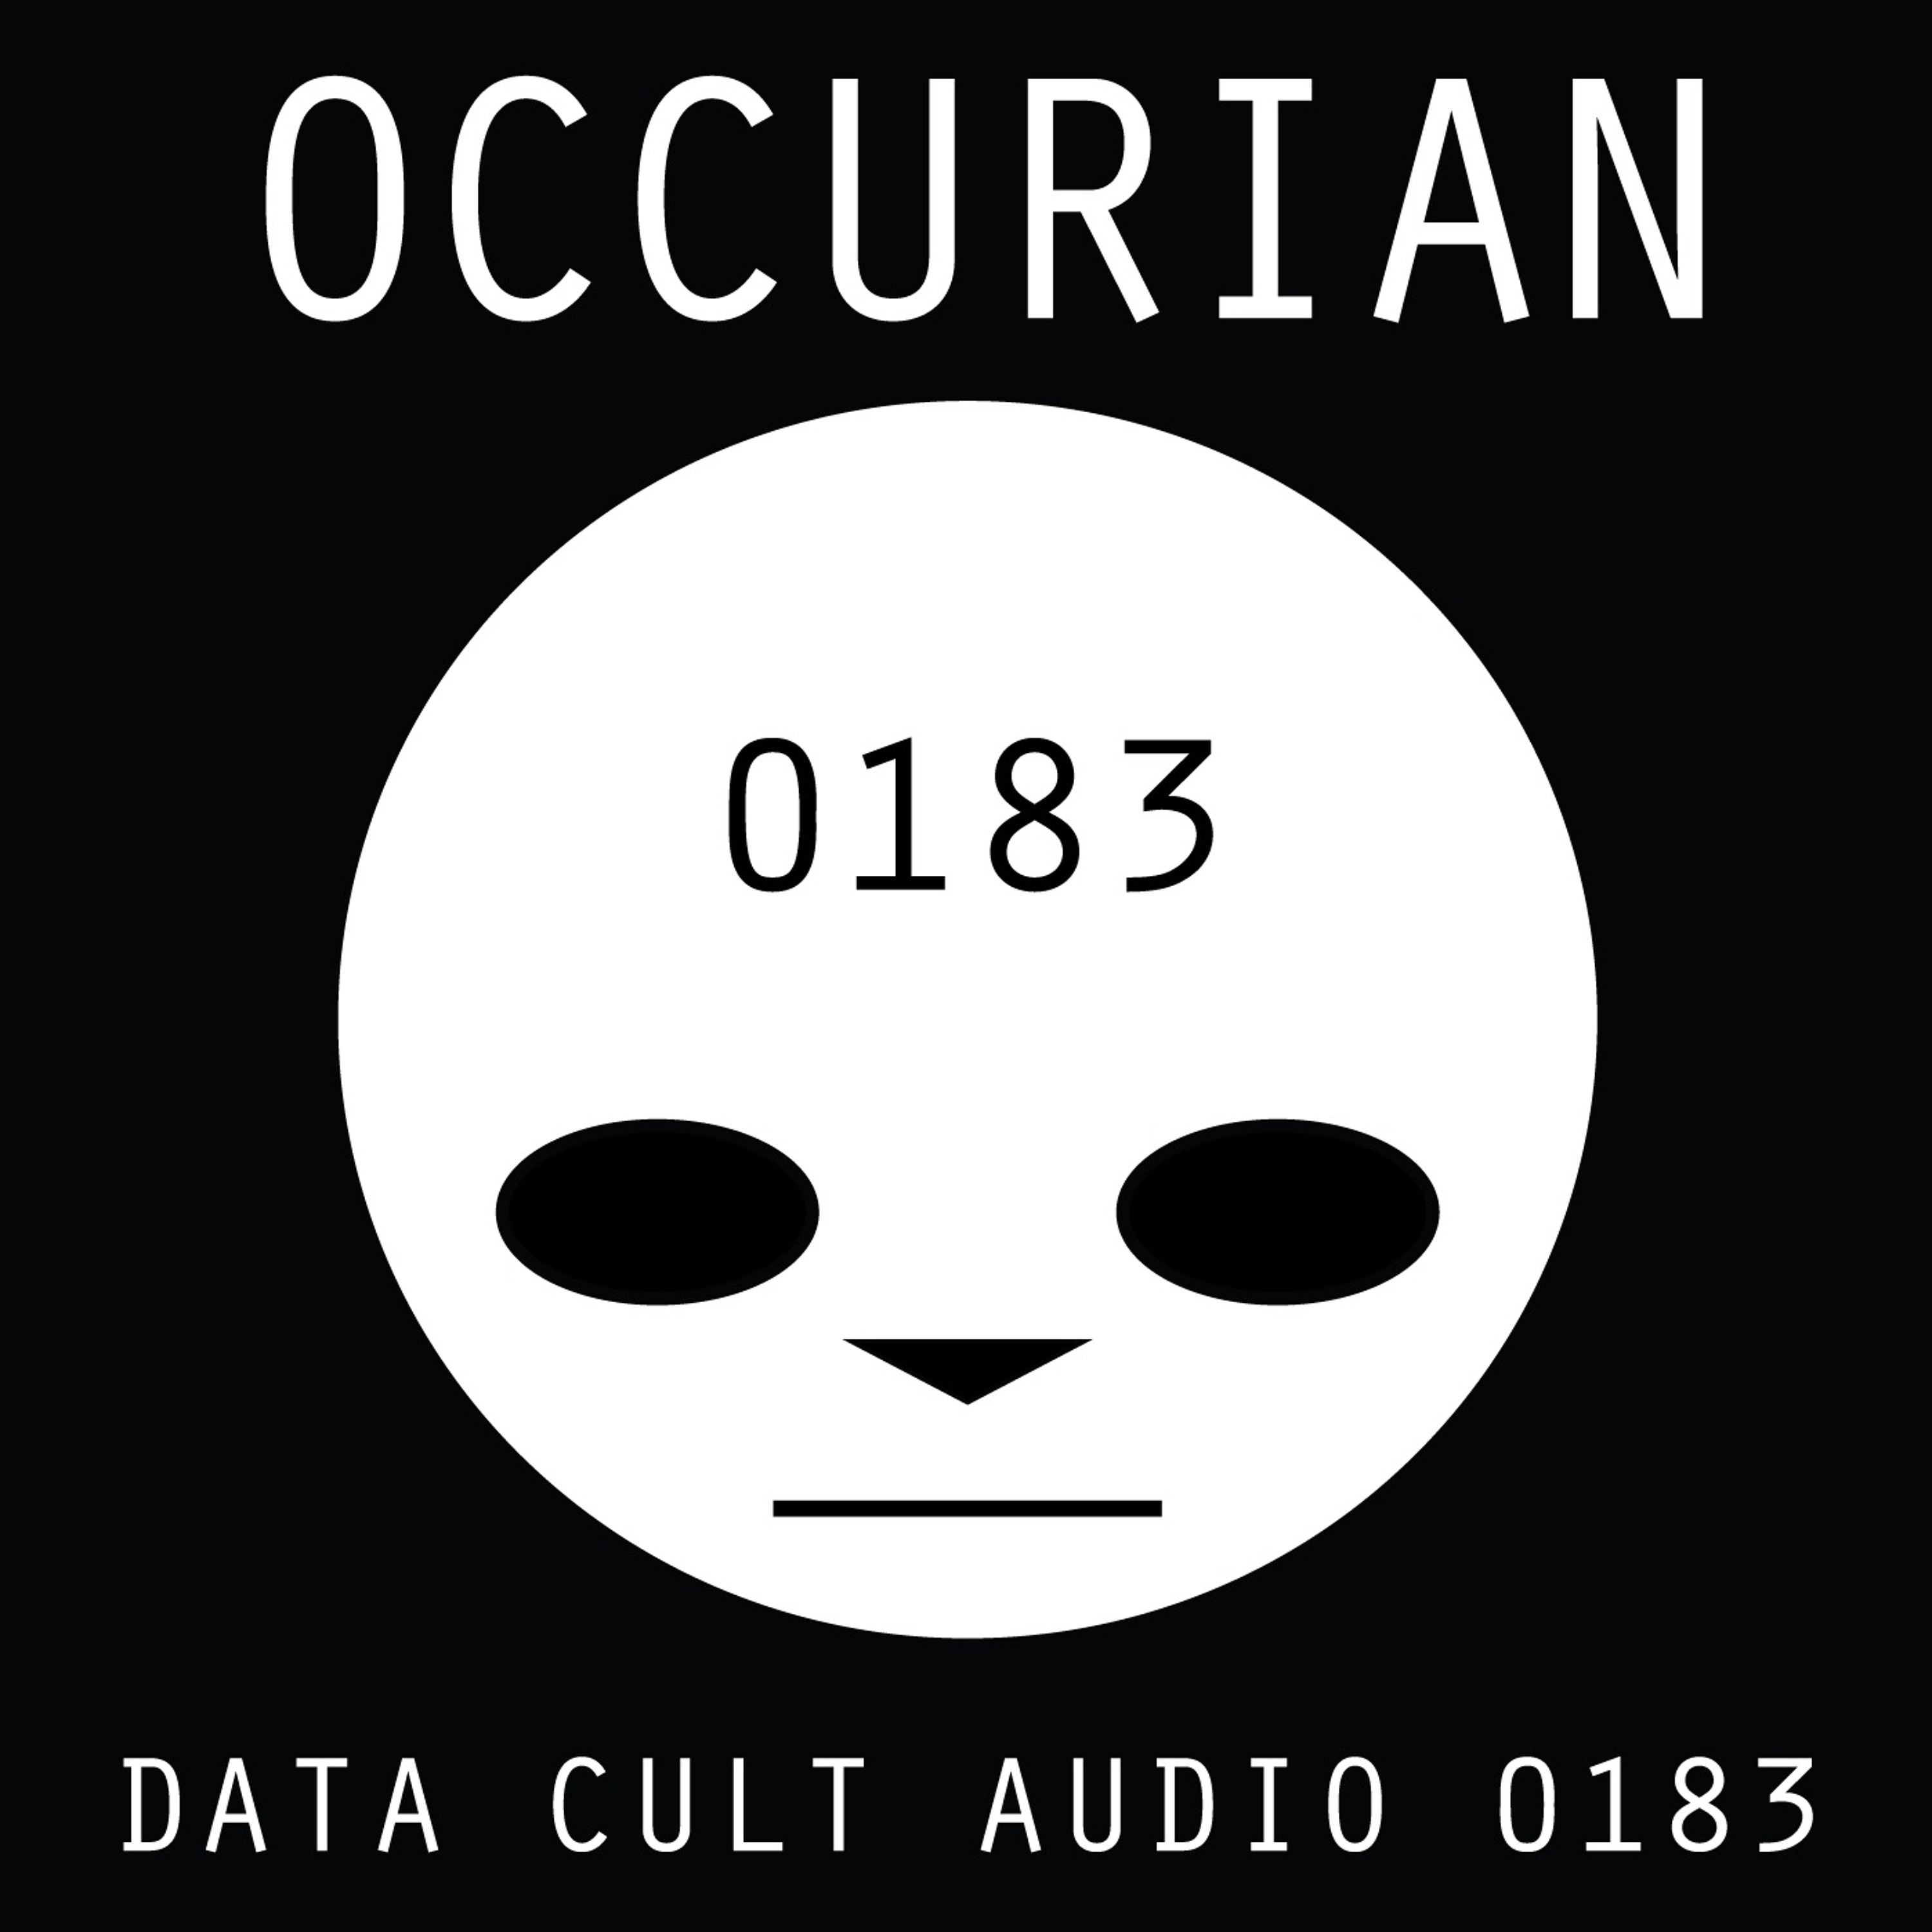 Data Cult Audio 0183 - Occurian